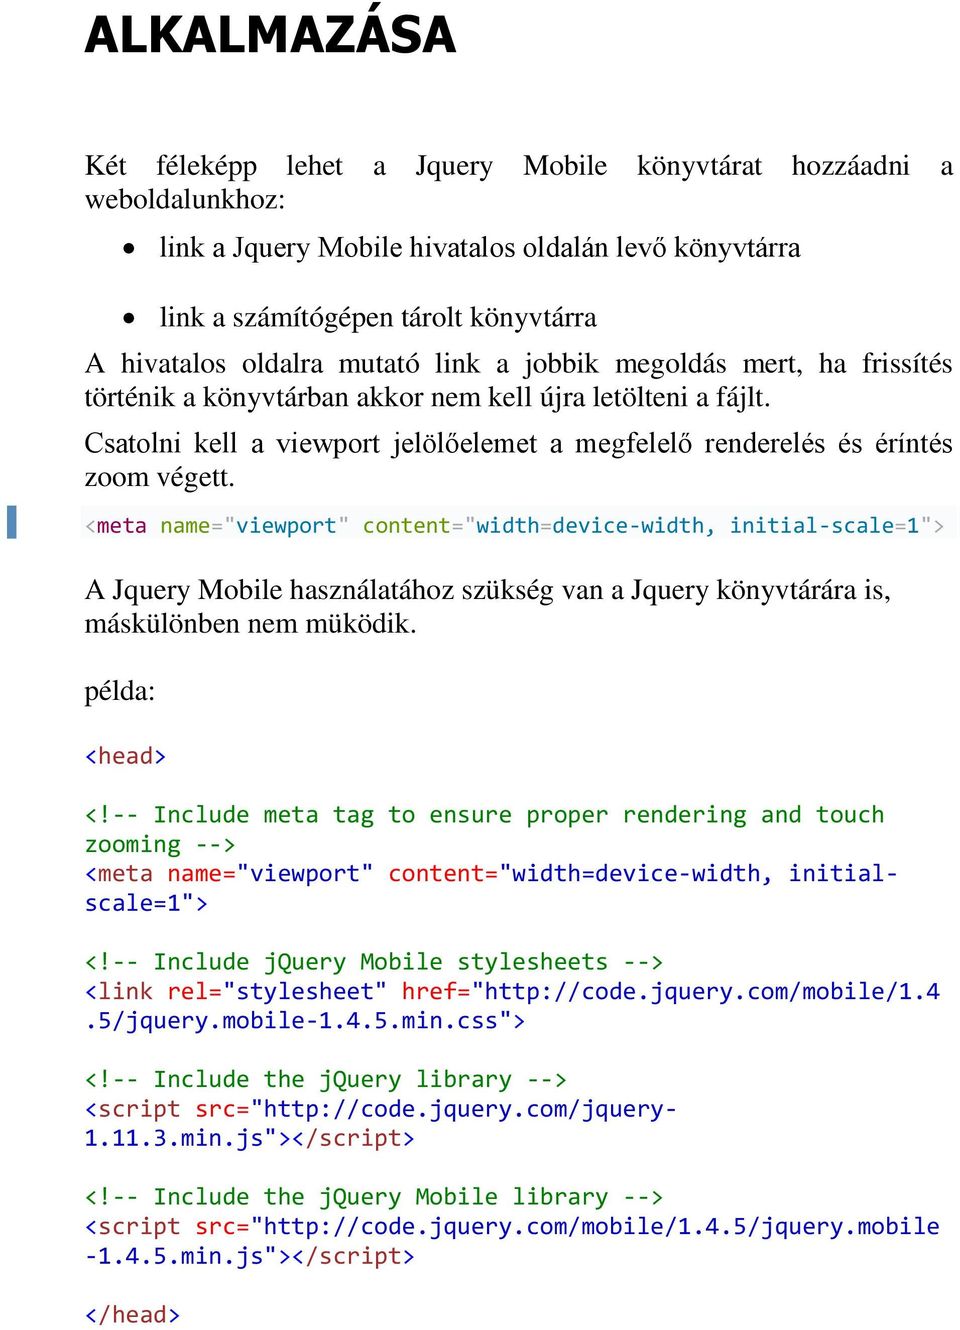 <meta name="viewport" content="width=device-width, initial-scale=1"> A Jquery Mobile használatához szükség van a Jquery könyvtárára is, máskülönben nem müködik. példa: <head> <!